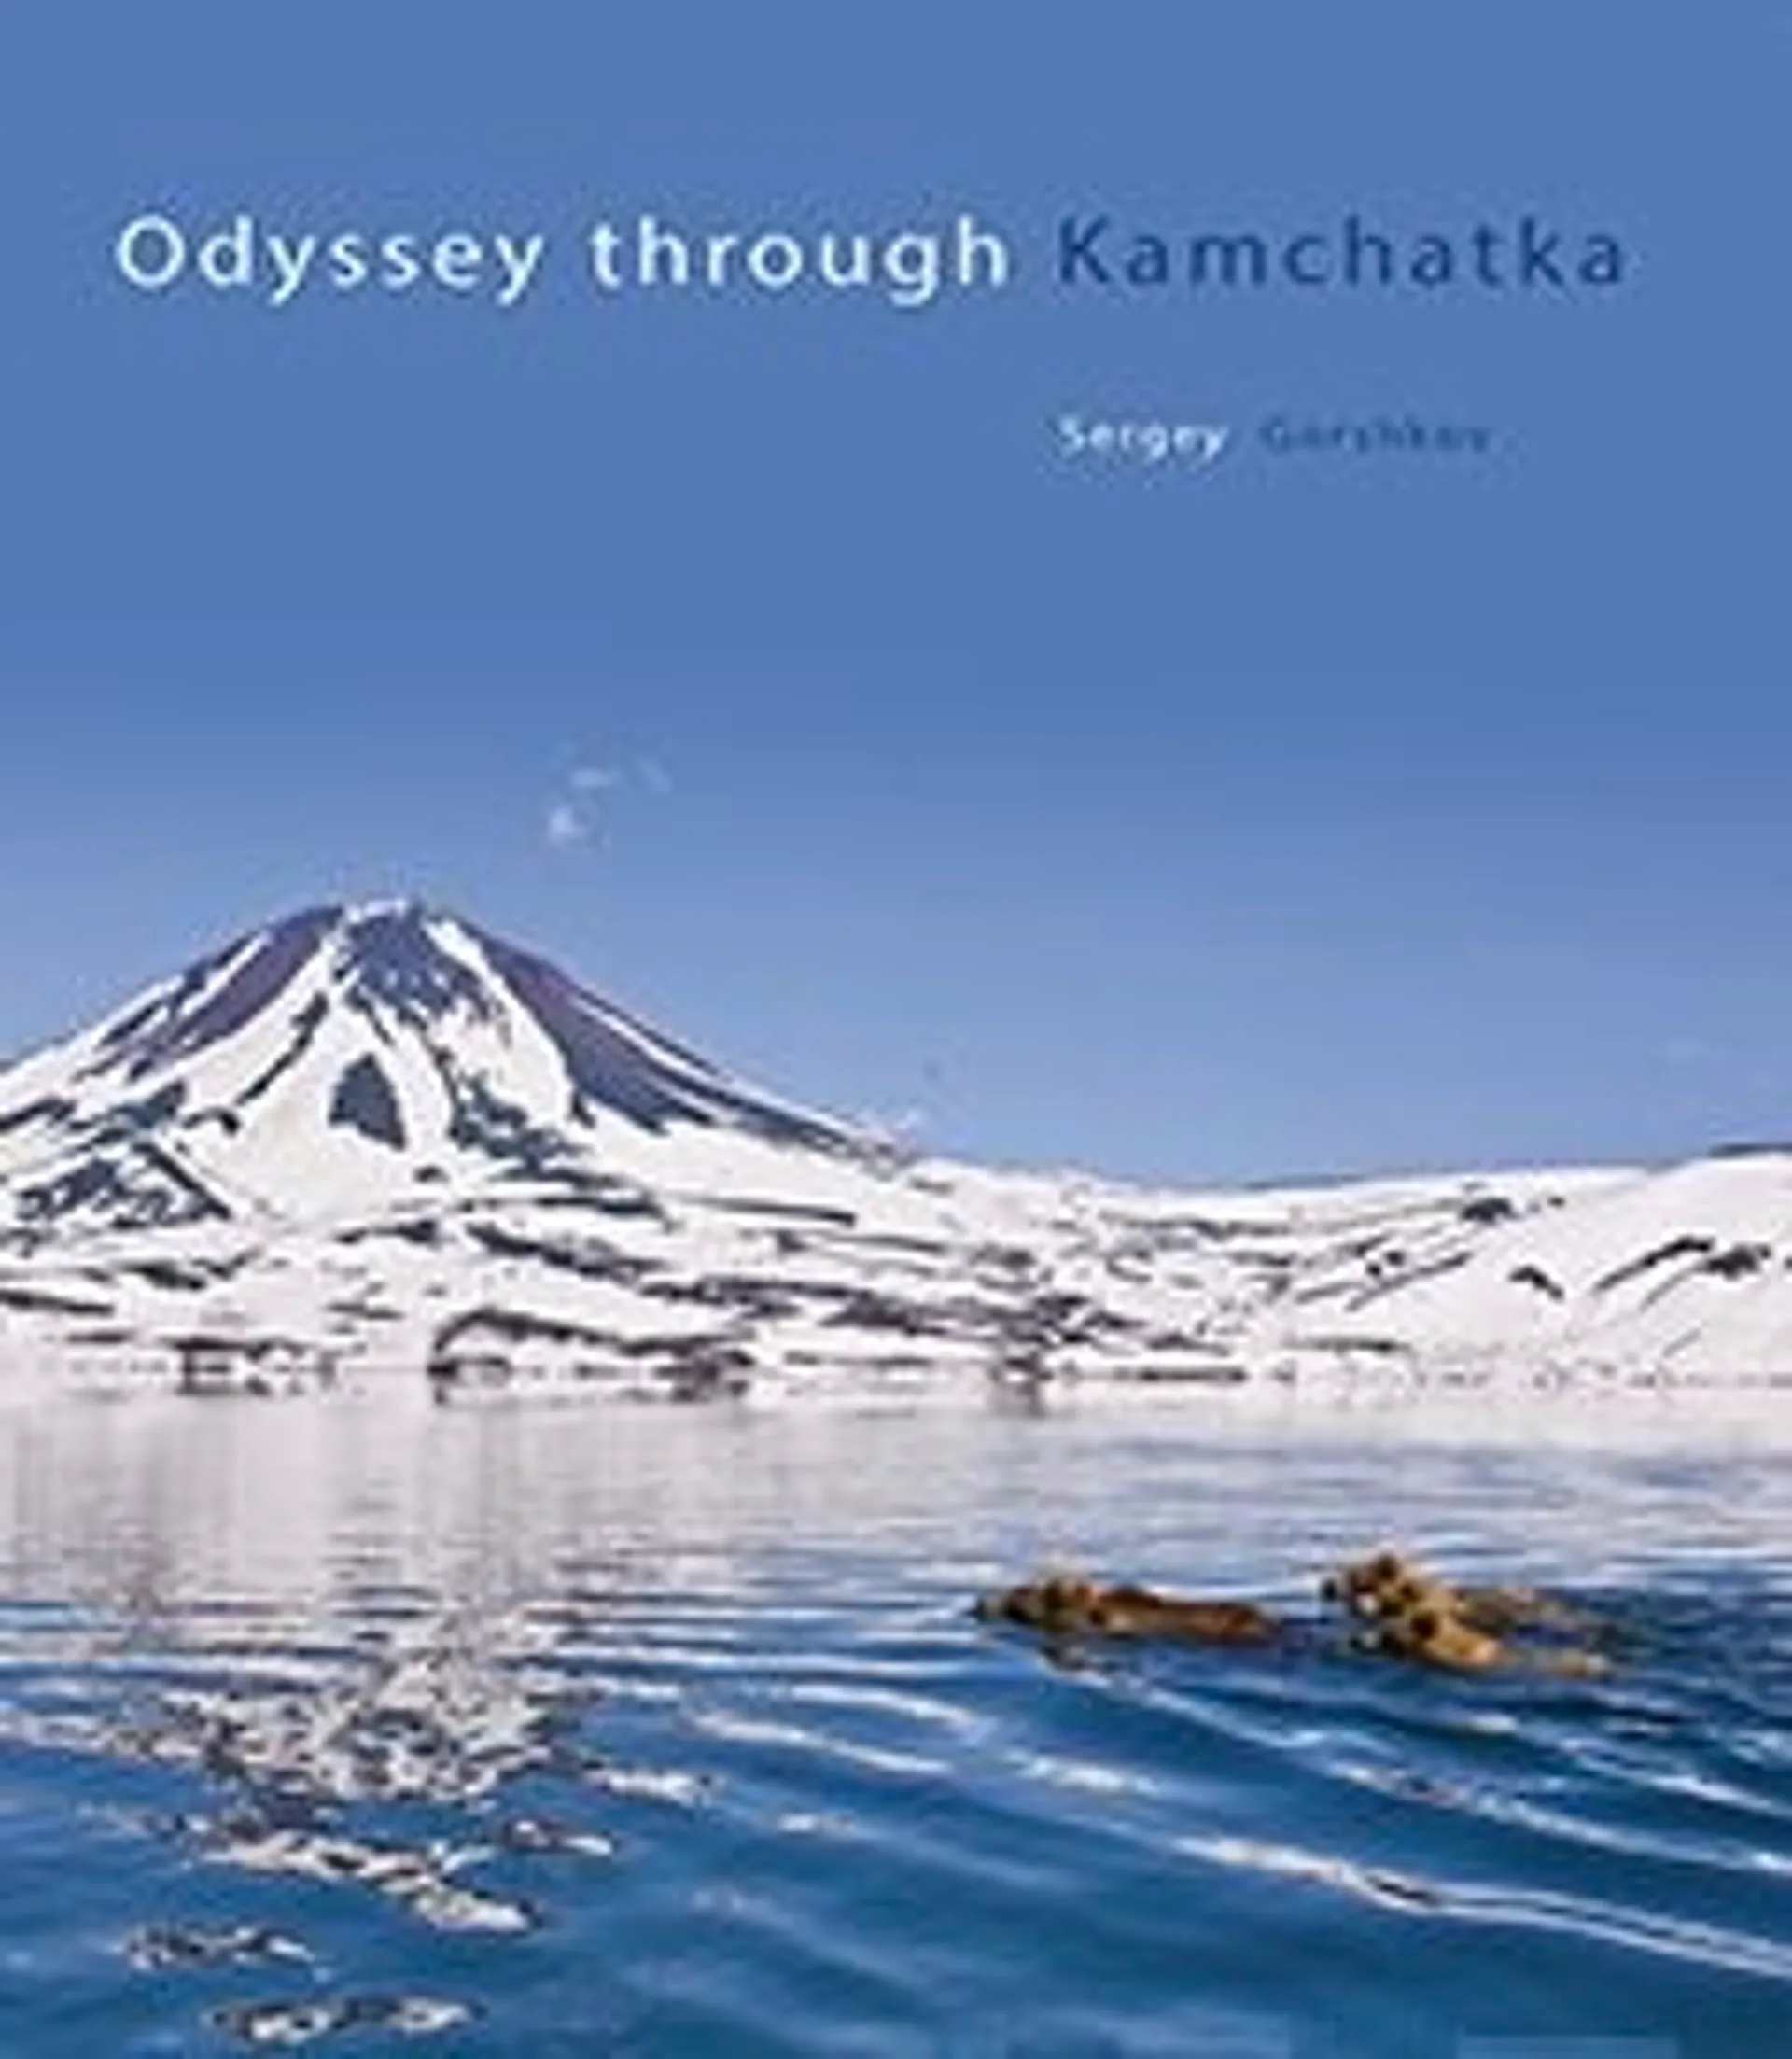 Odyssey through Kamchatka